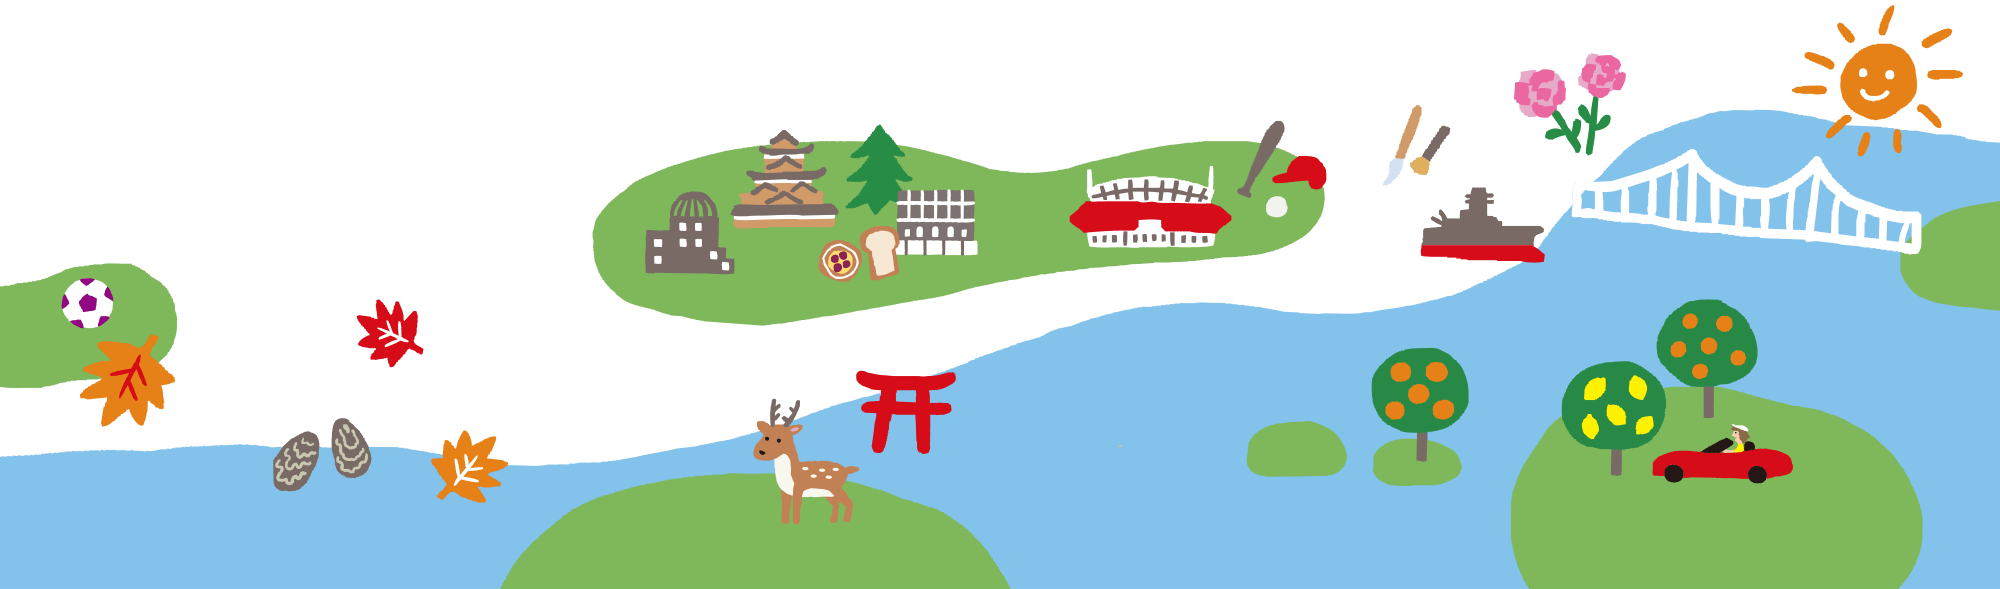 広島のイラスト